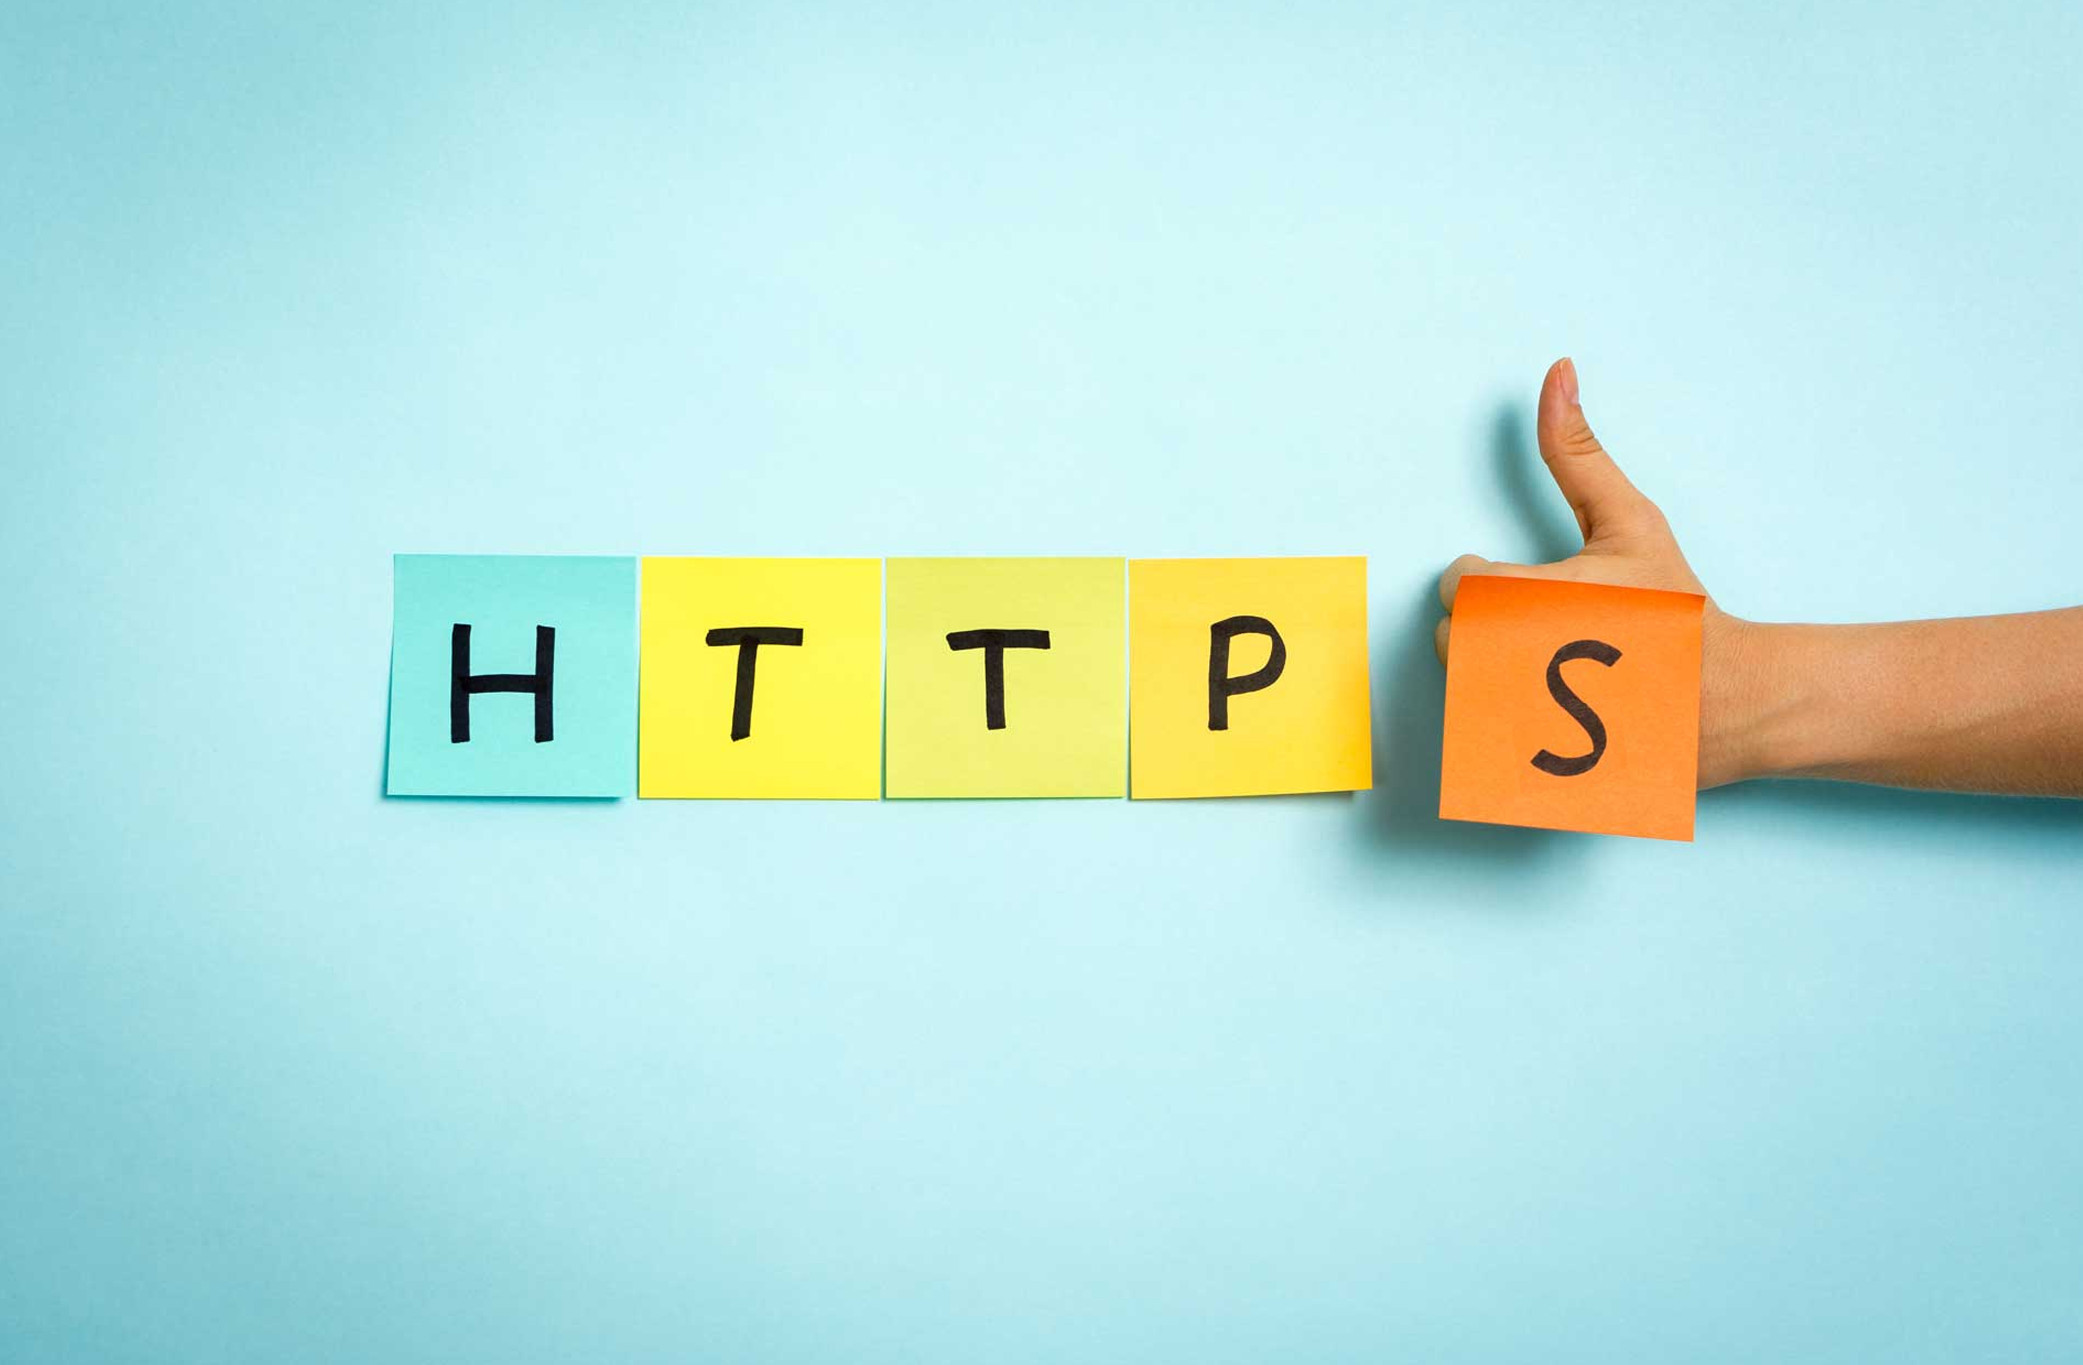 Passage en HTTPS pour un gain SEO, ça marche ou pas?